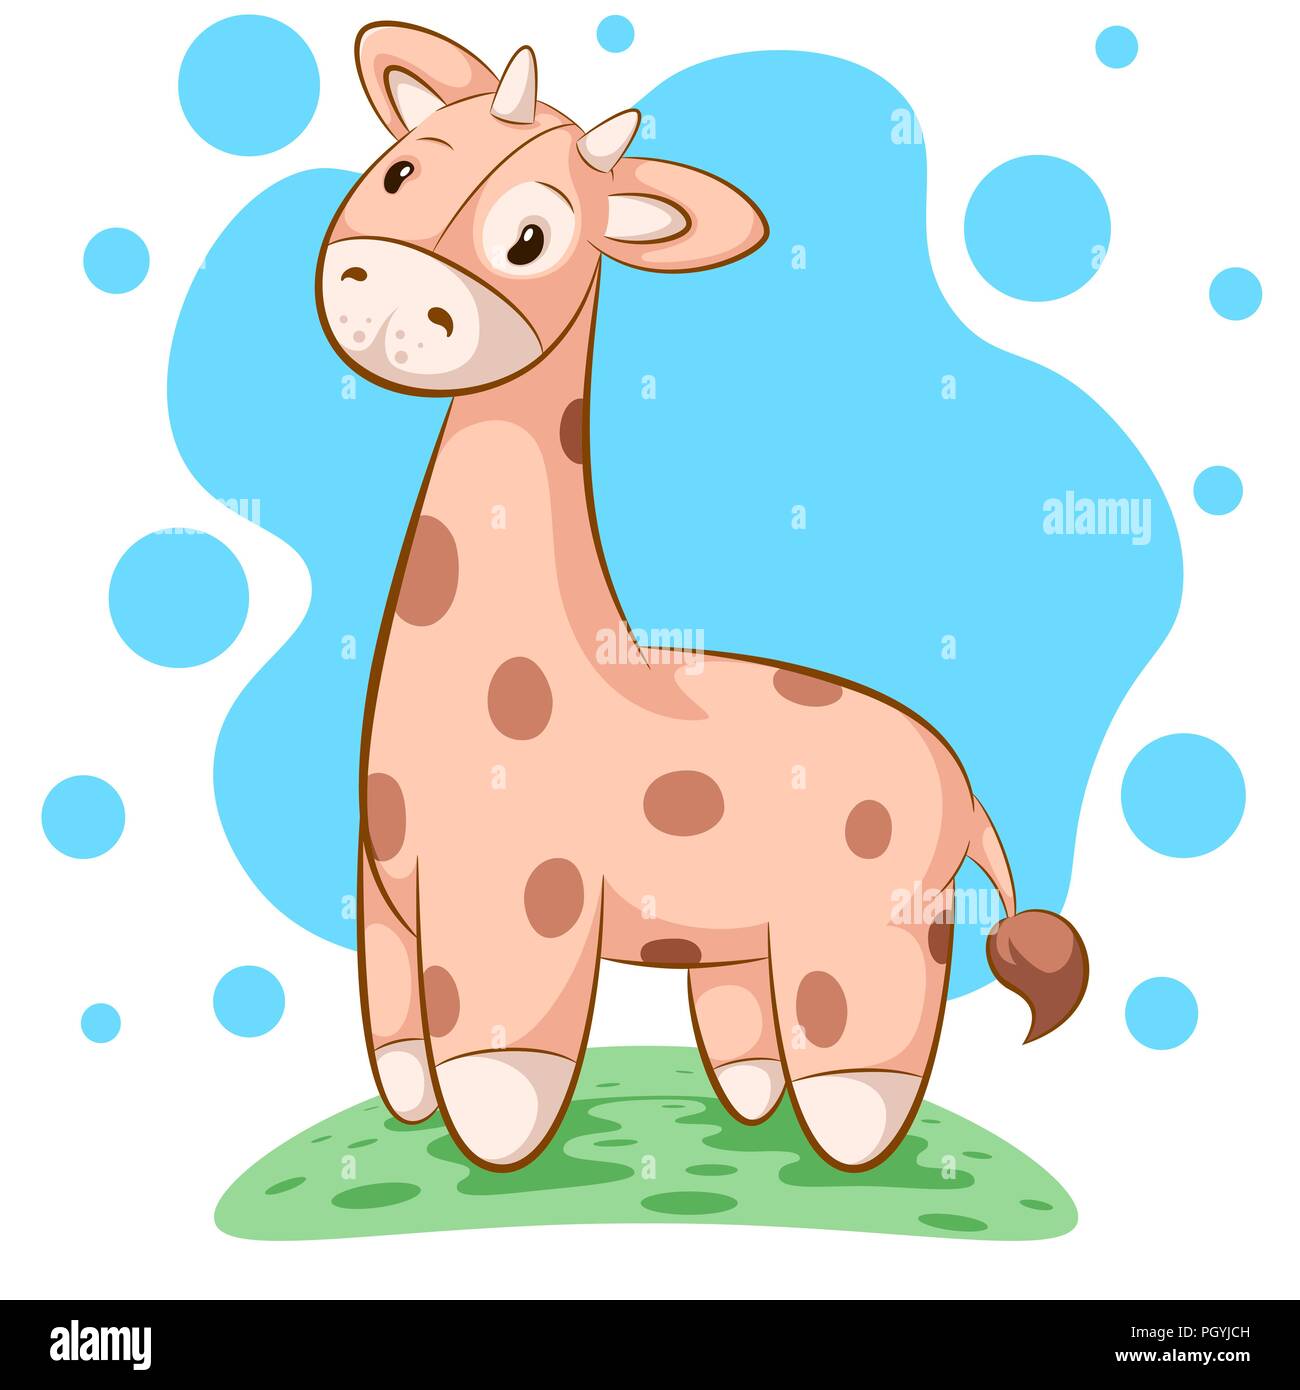 Cute, funny teddy giraffe - cartoon illustration. Stock Vector